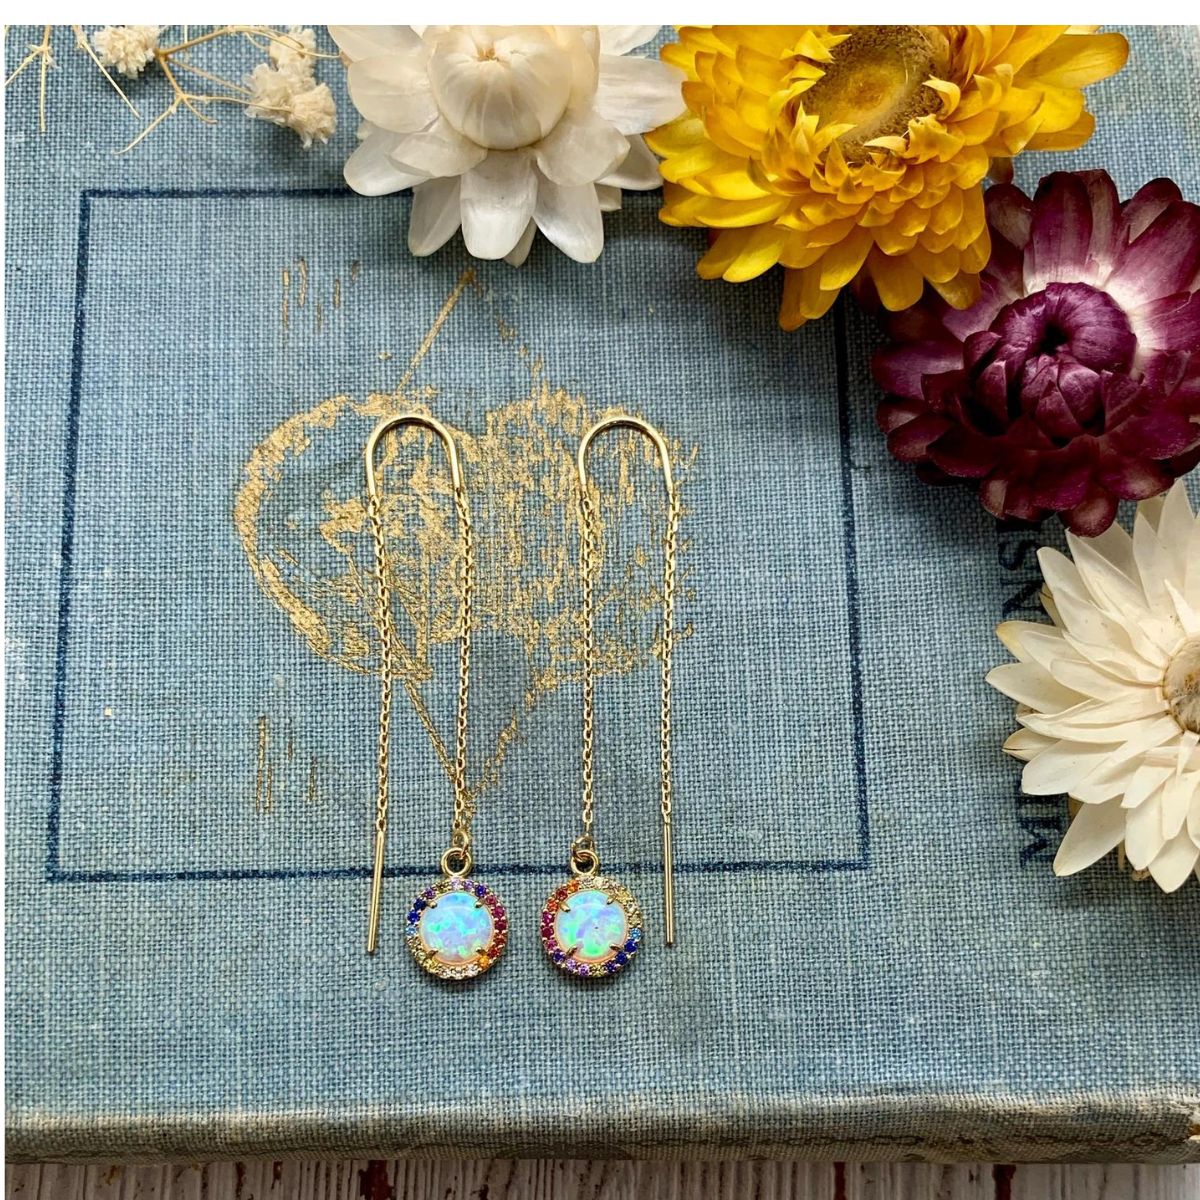 Rainbow opal threader earrings